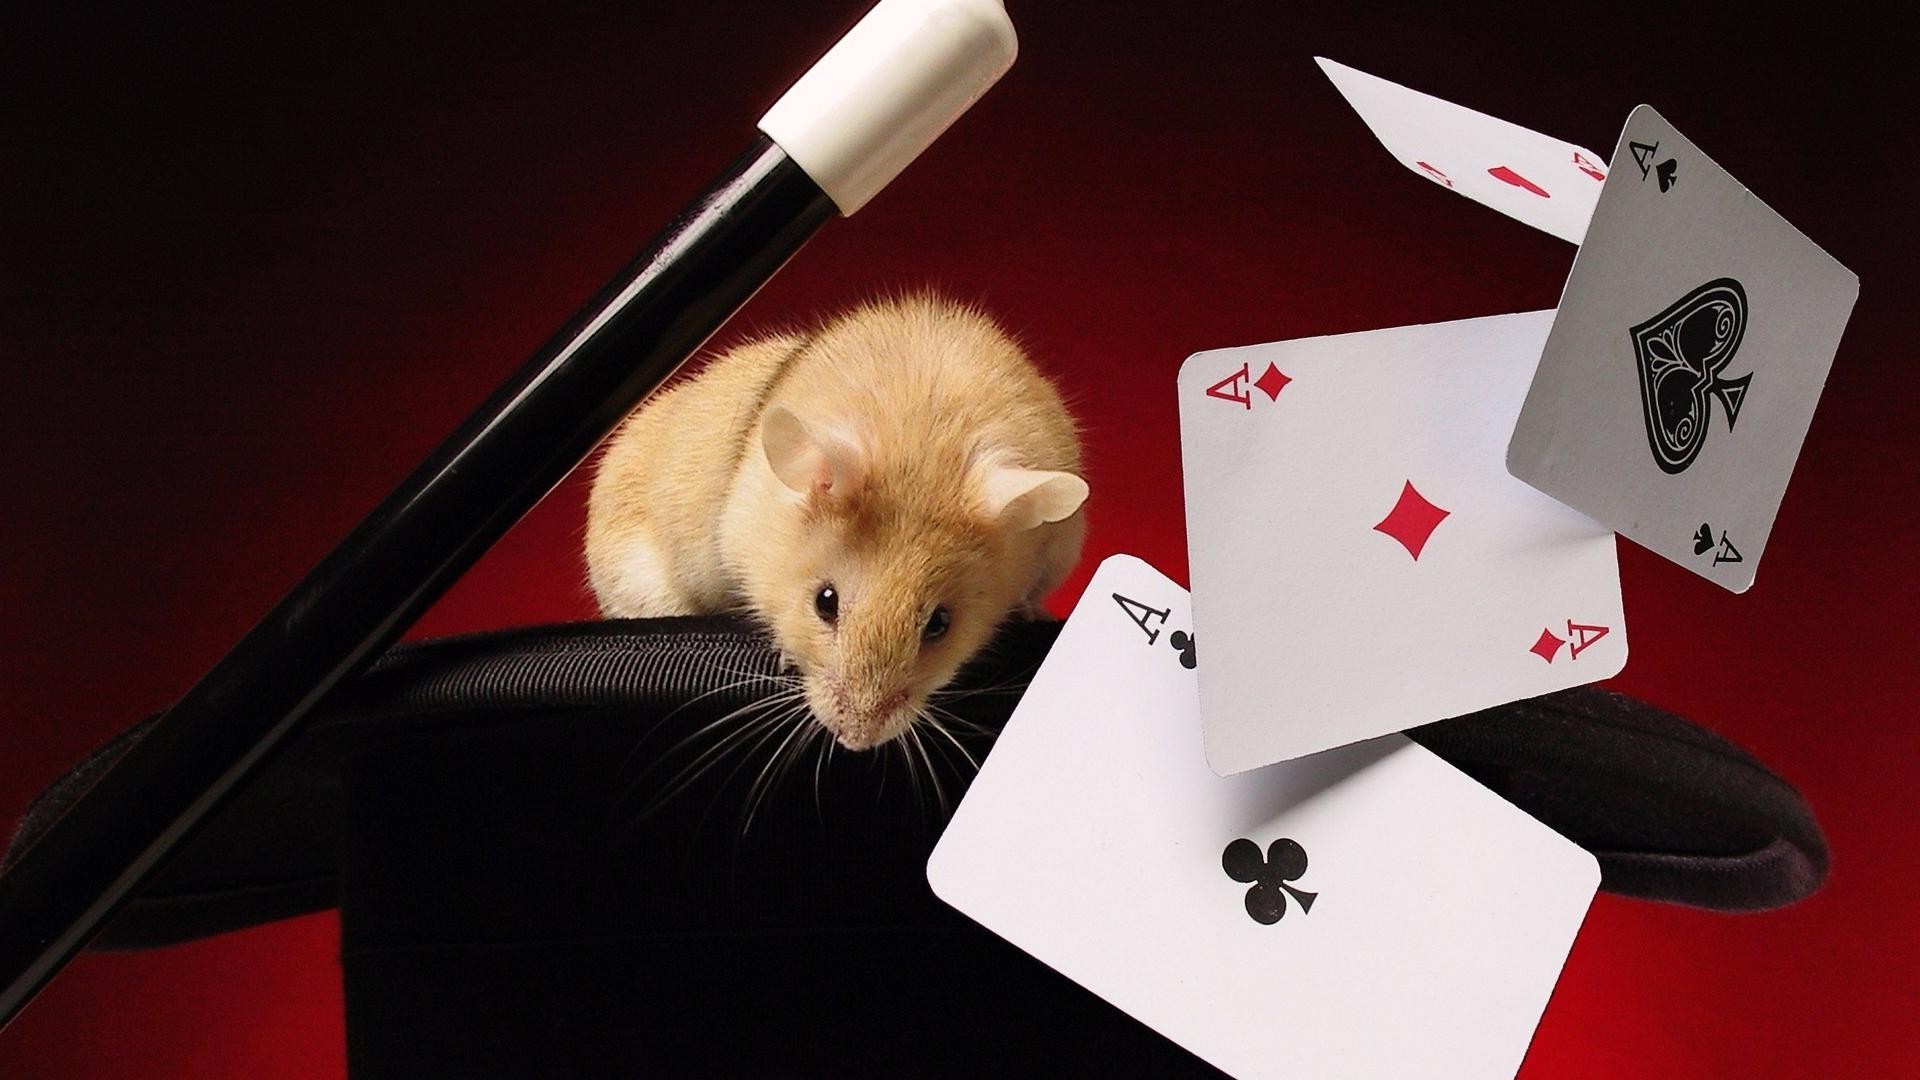 животные покер казино один бизнес риск млекопитающее удачи азартные игры